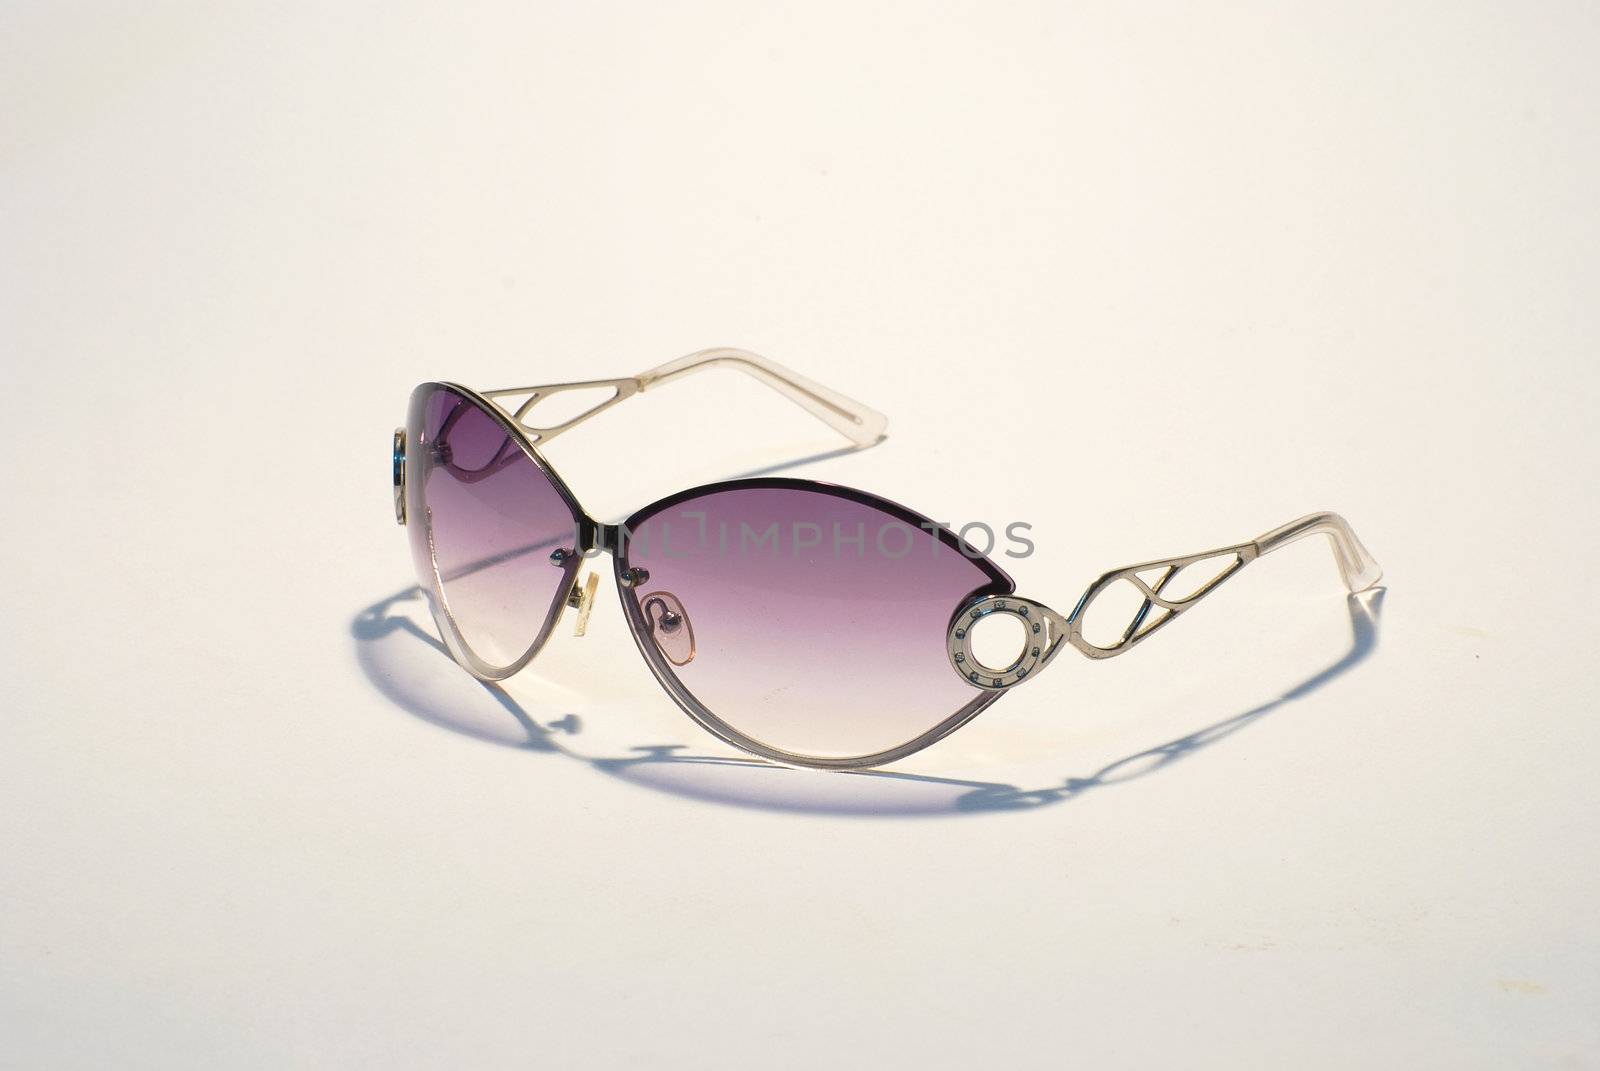 Sunglasses by hyena1515